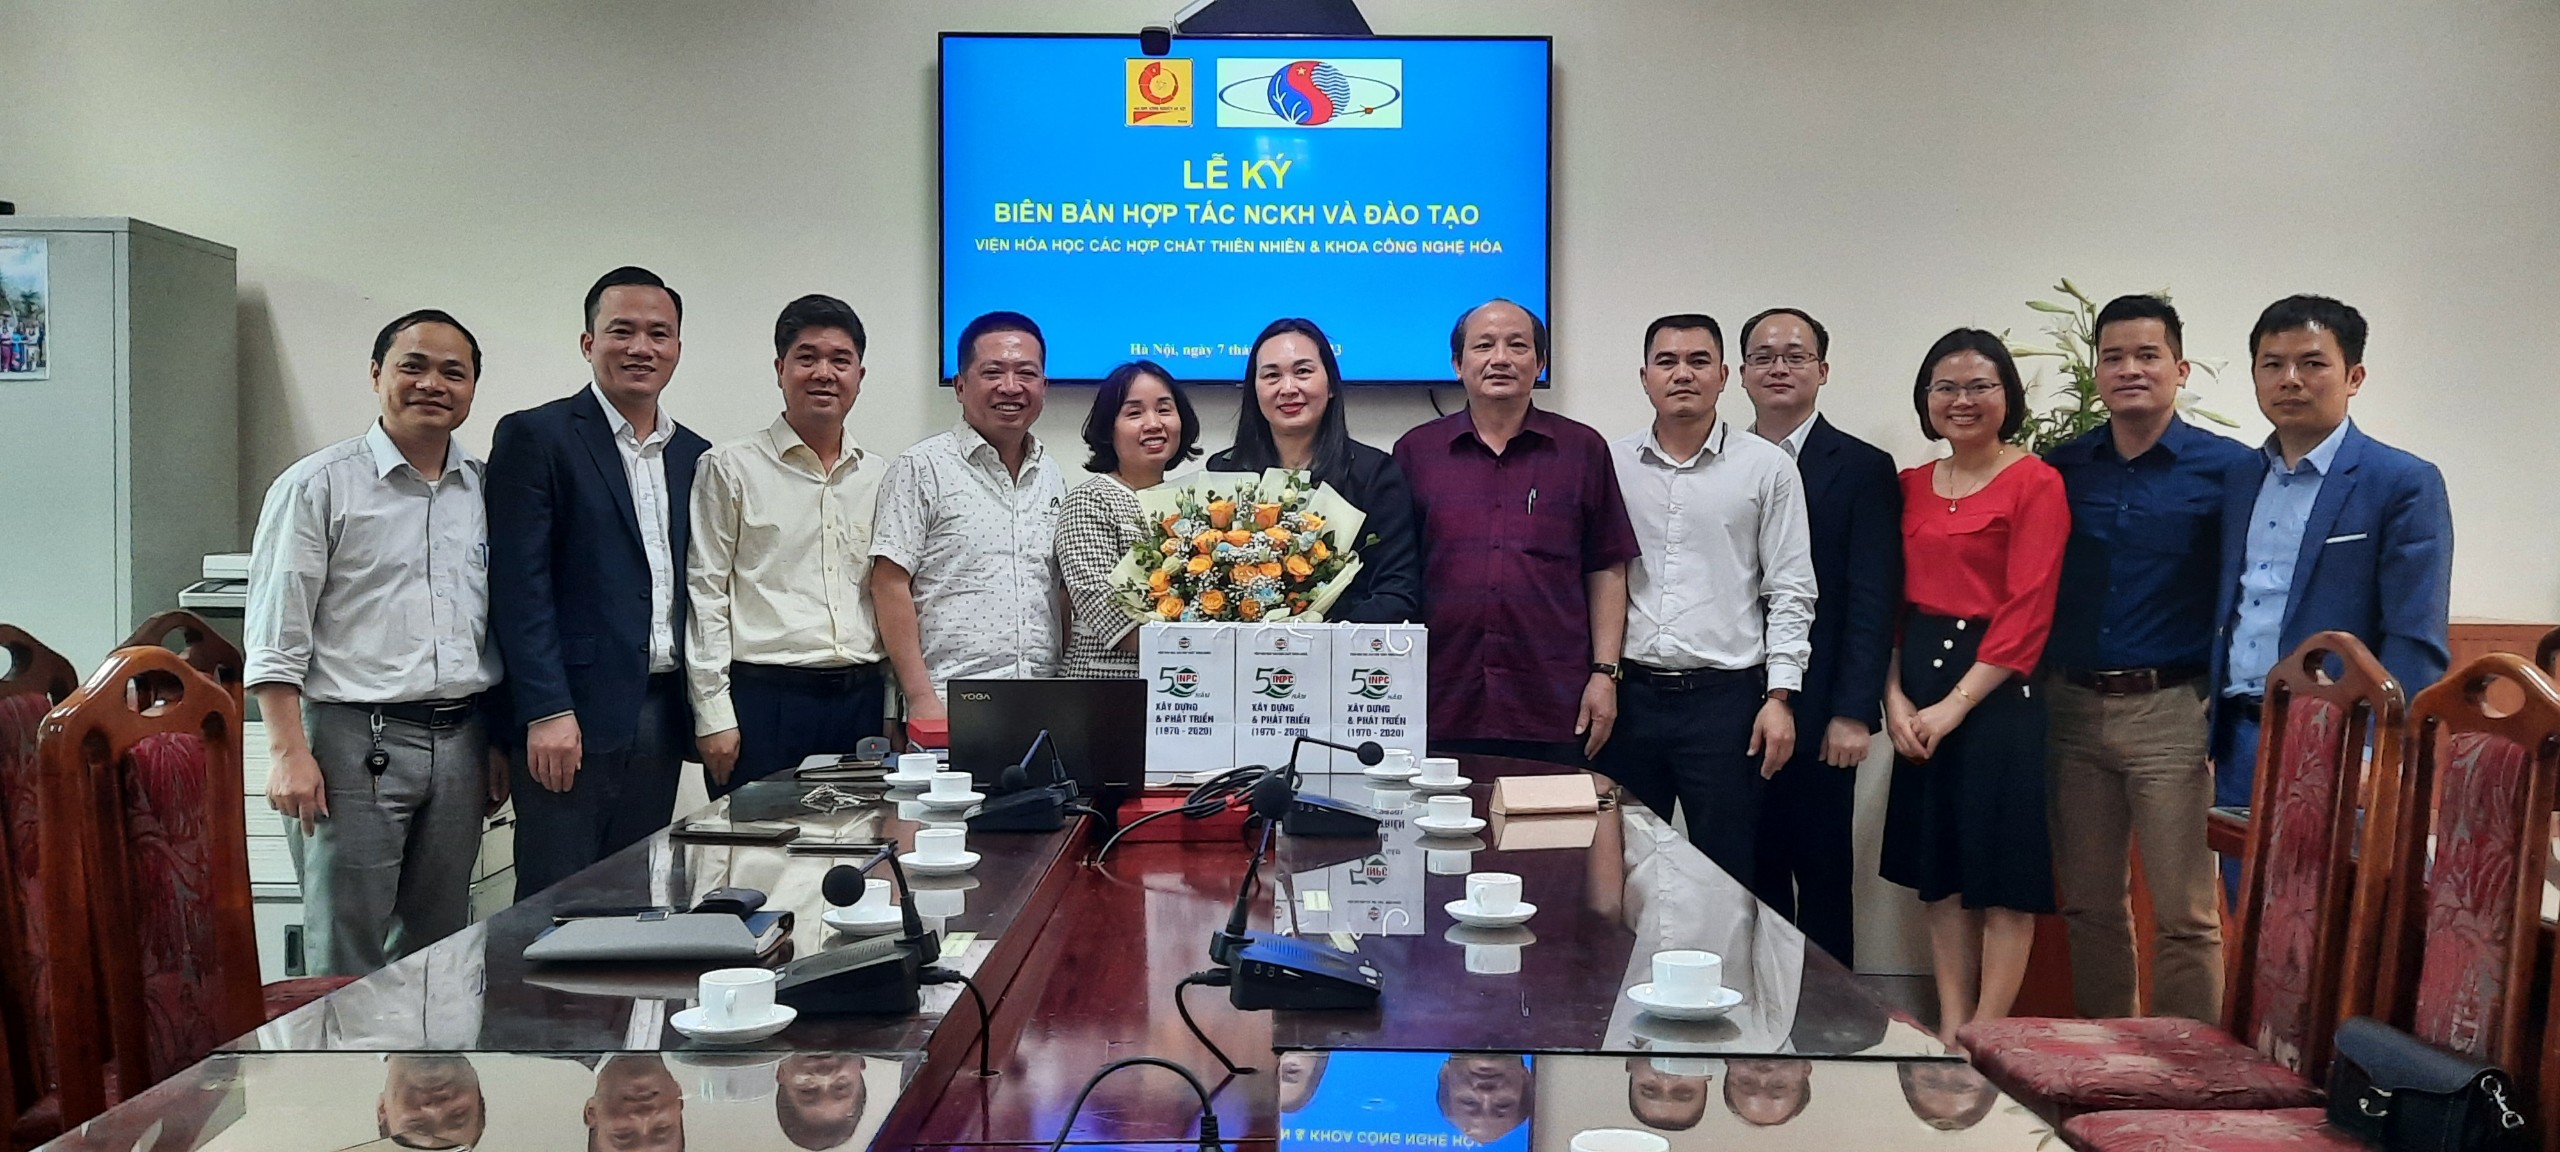 Lễ ký kết thỏa thuận hợp tác giữa Viện Hóa học các Hợp chất thiên nhiên và Đại học Công nghiệp Hà Nội